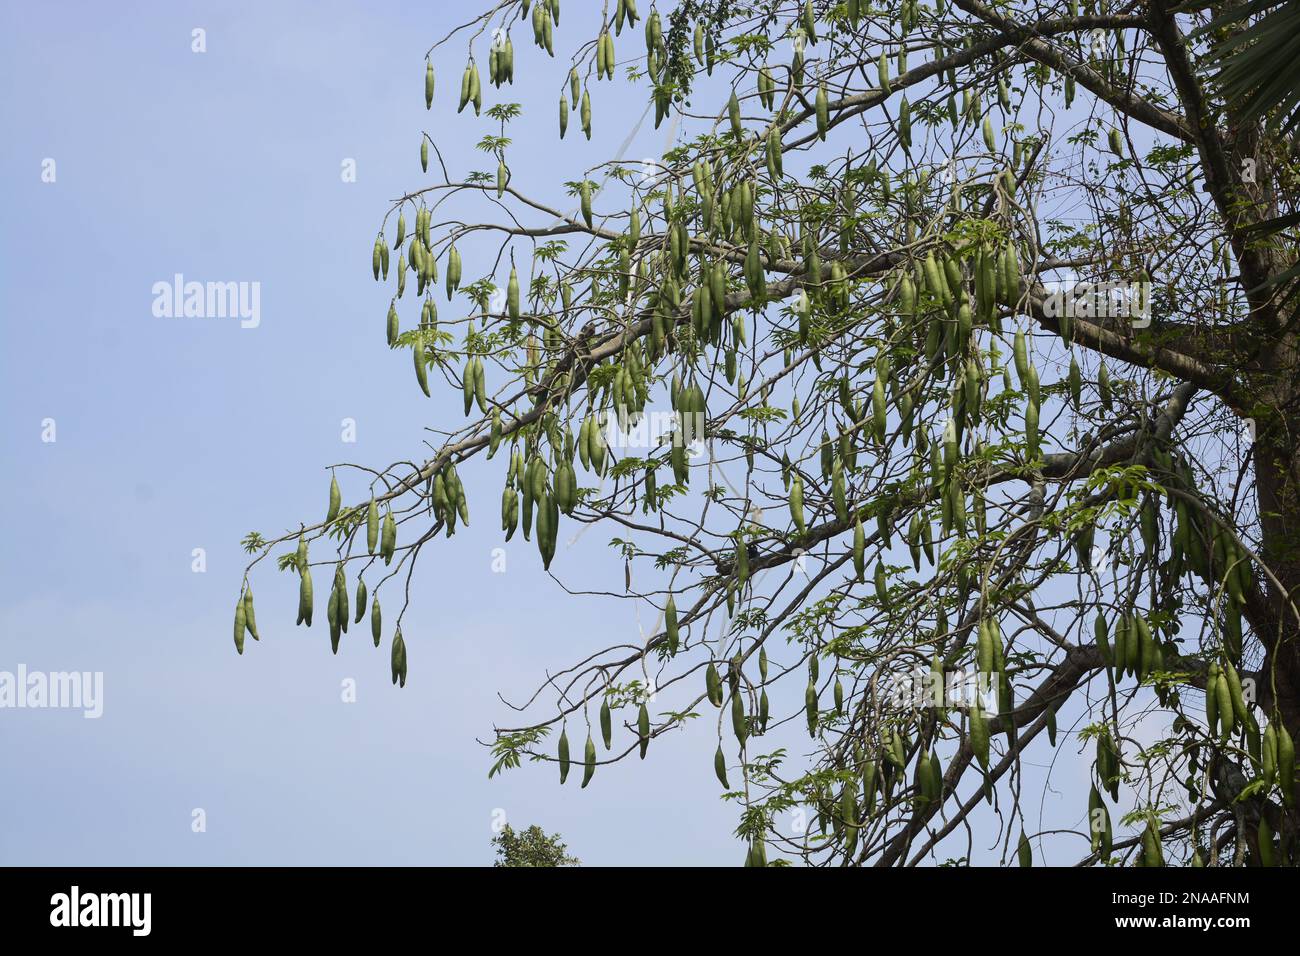 Der Baum und die baumwollartige Fusel, die aus den Samenschoten gewonnen werden, sind im Englischen allgemein als Kapok bekannt. Stockfoto